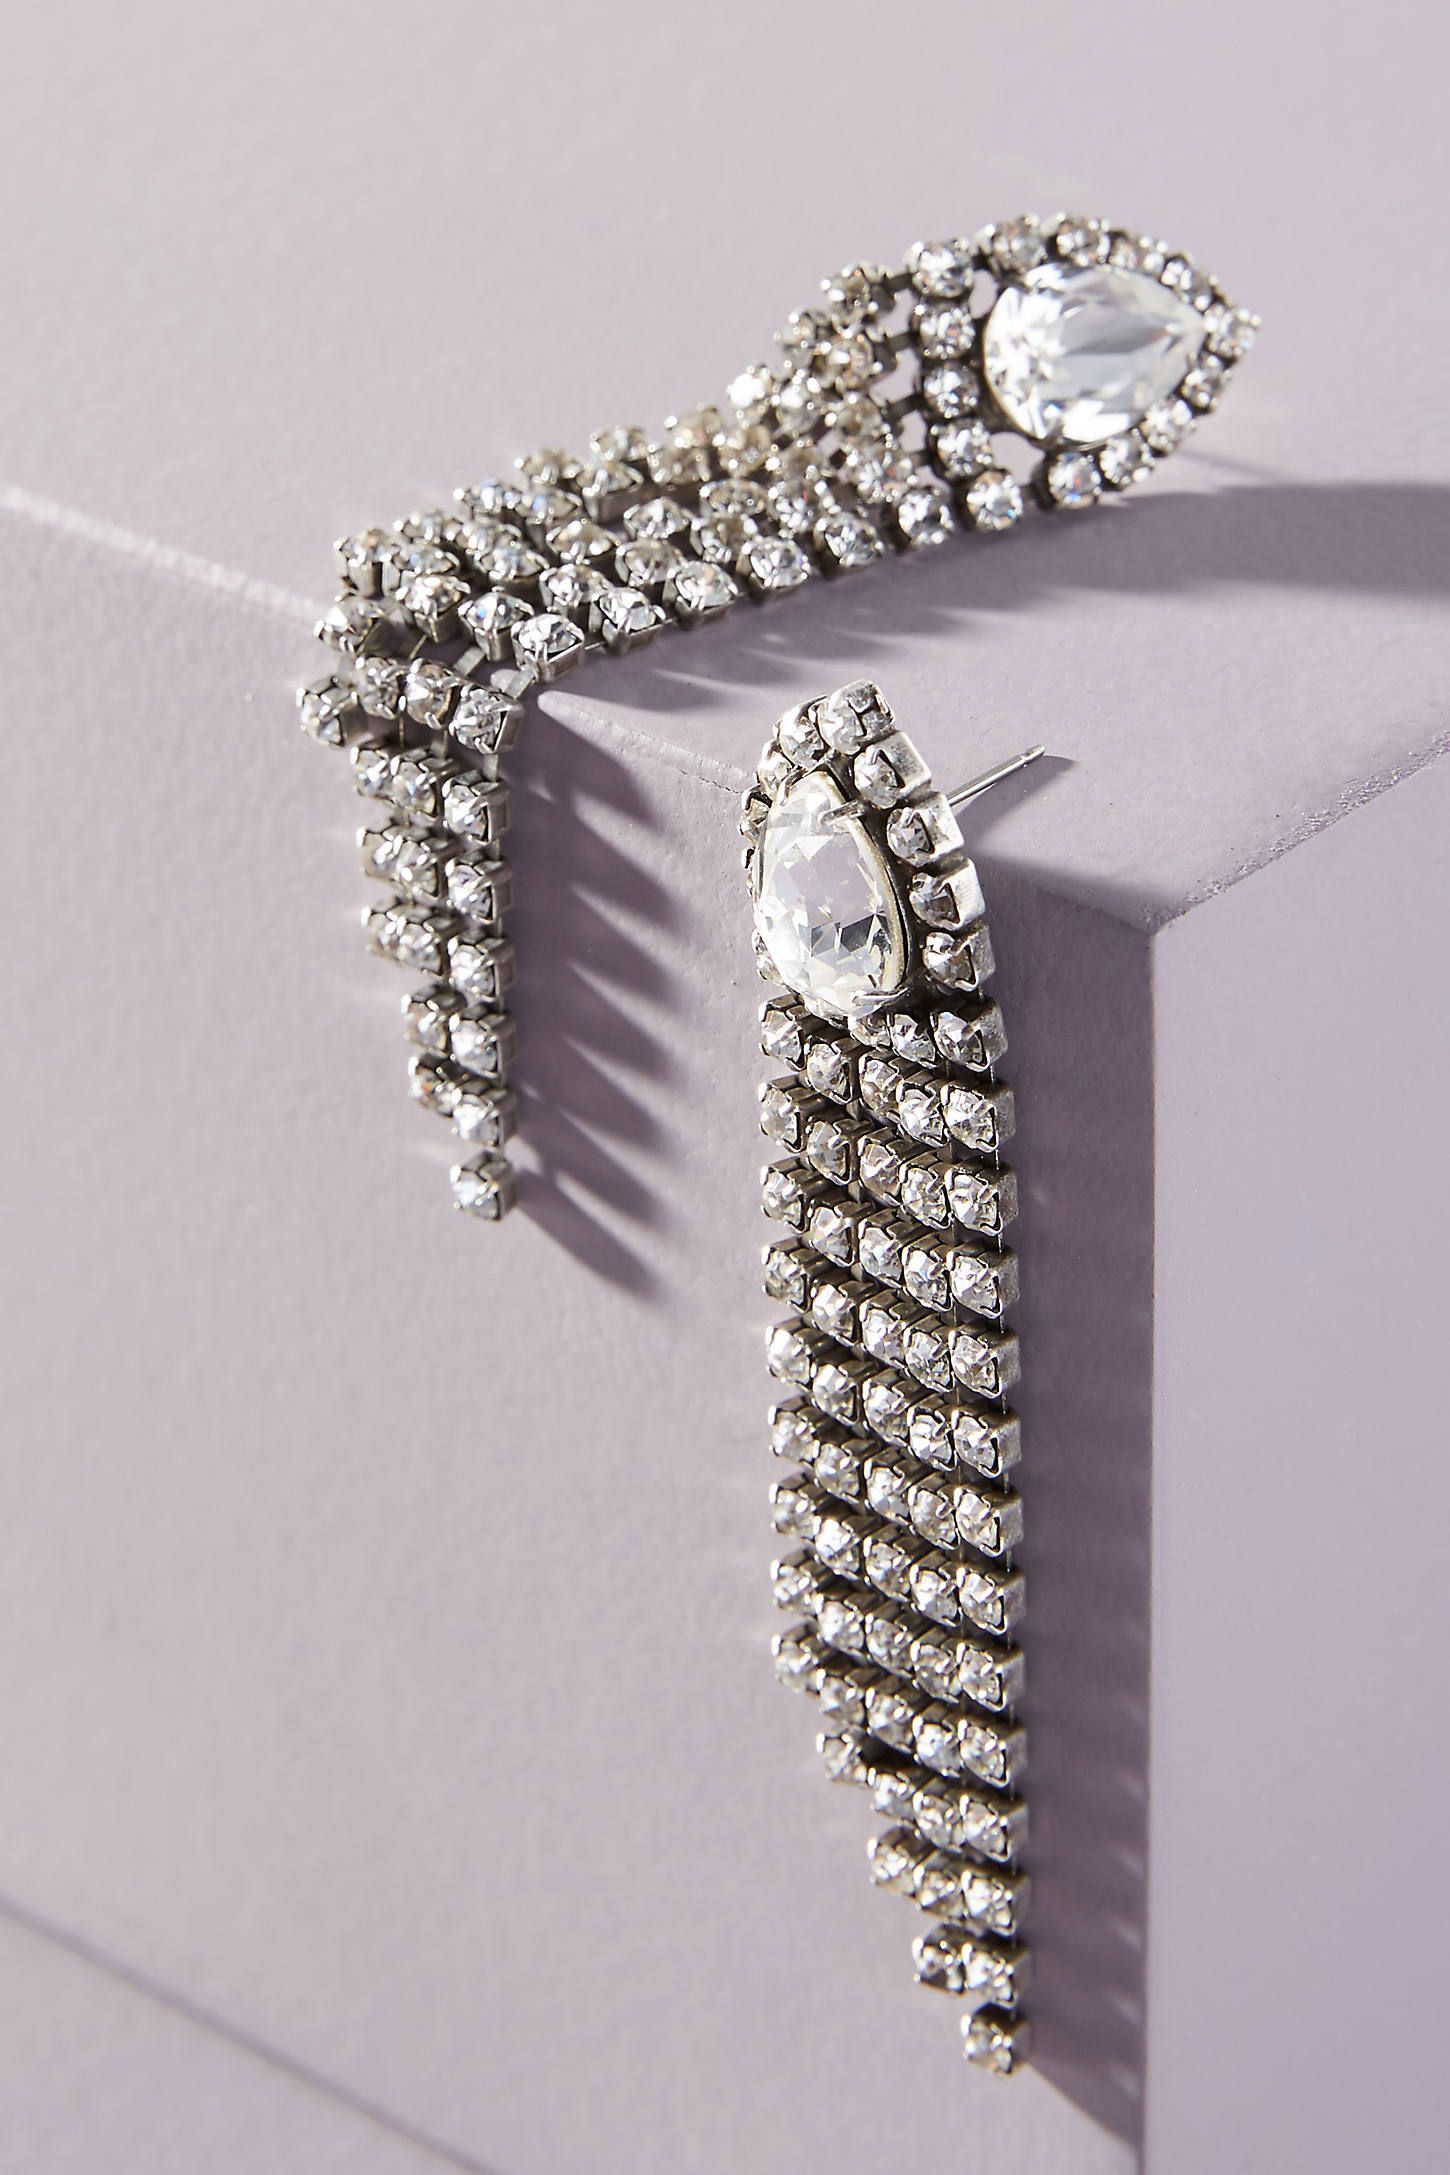 13 women’s jewelry Earrings new york ideas